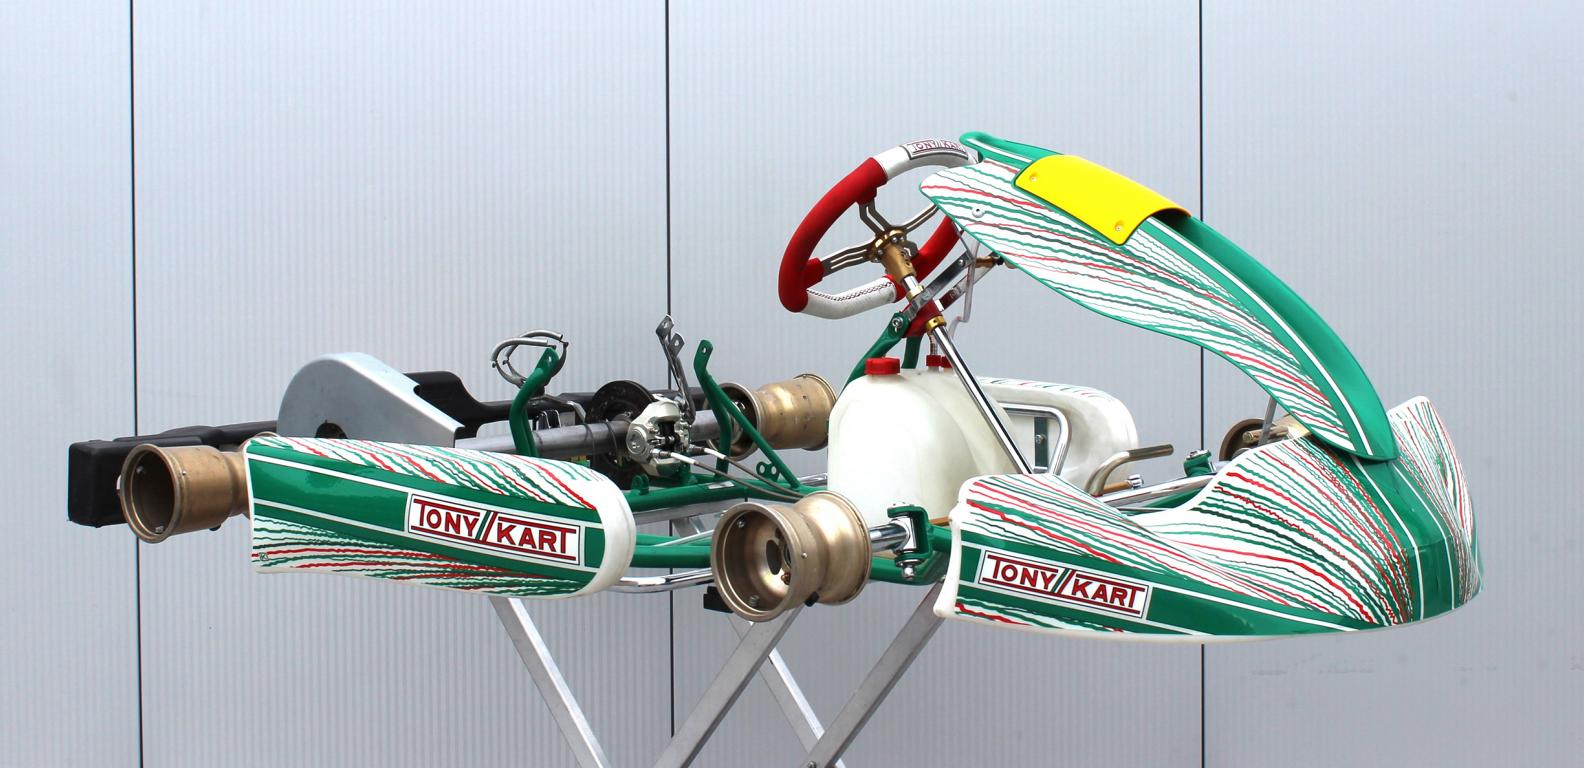 Tony Kart Racer 401RR, Jg. 2022